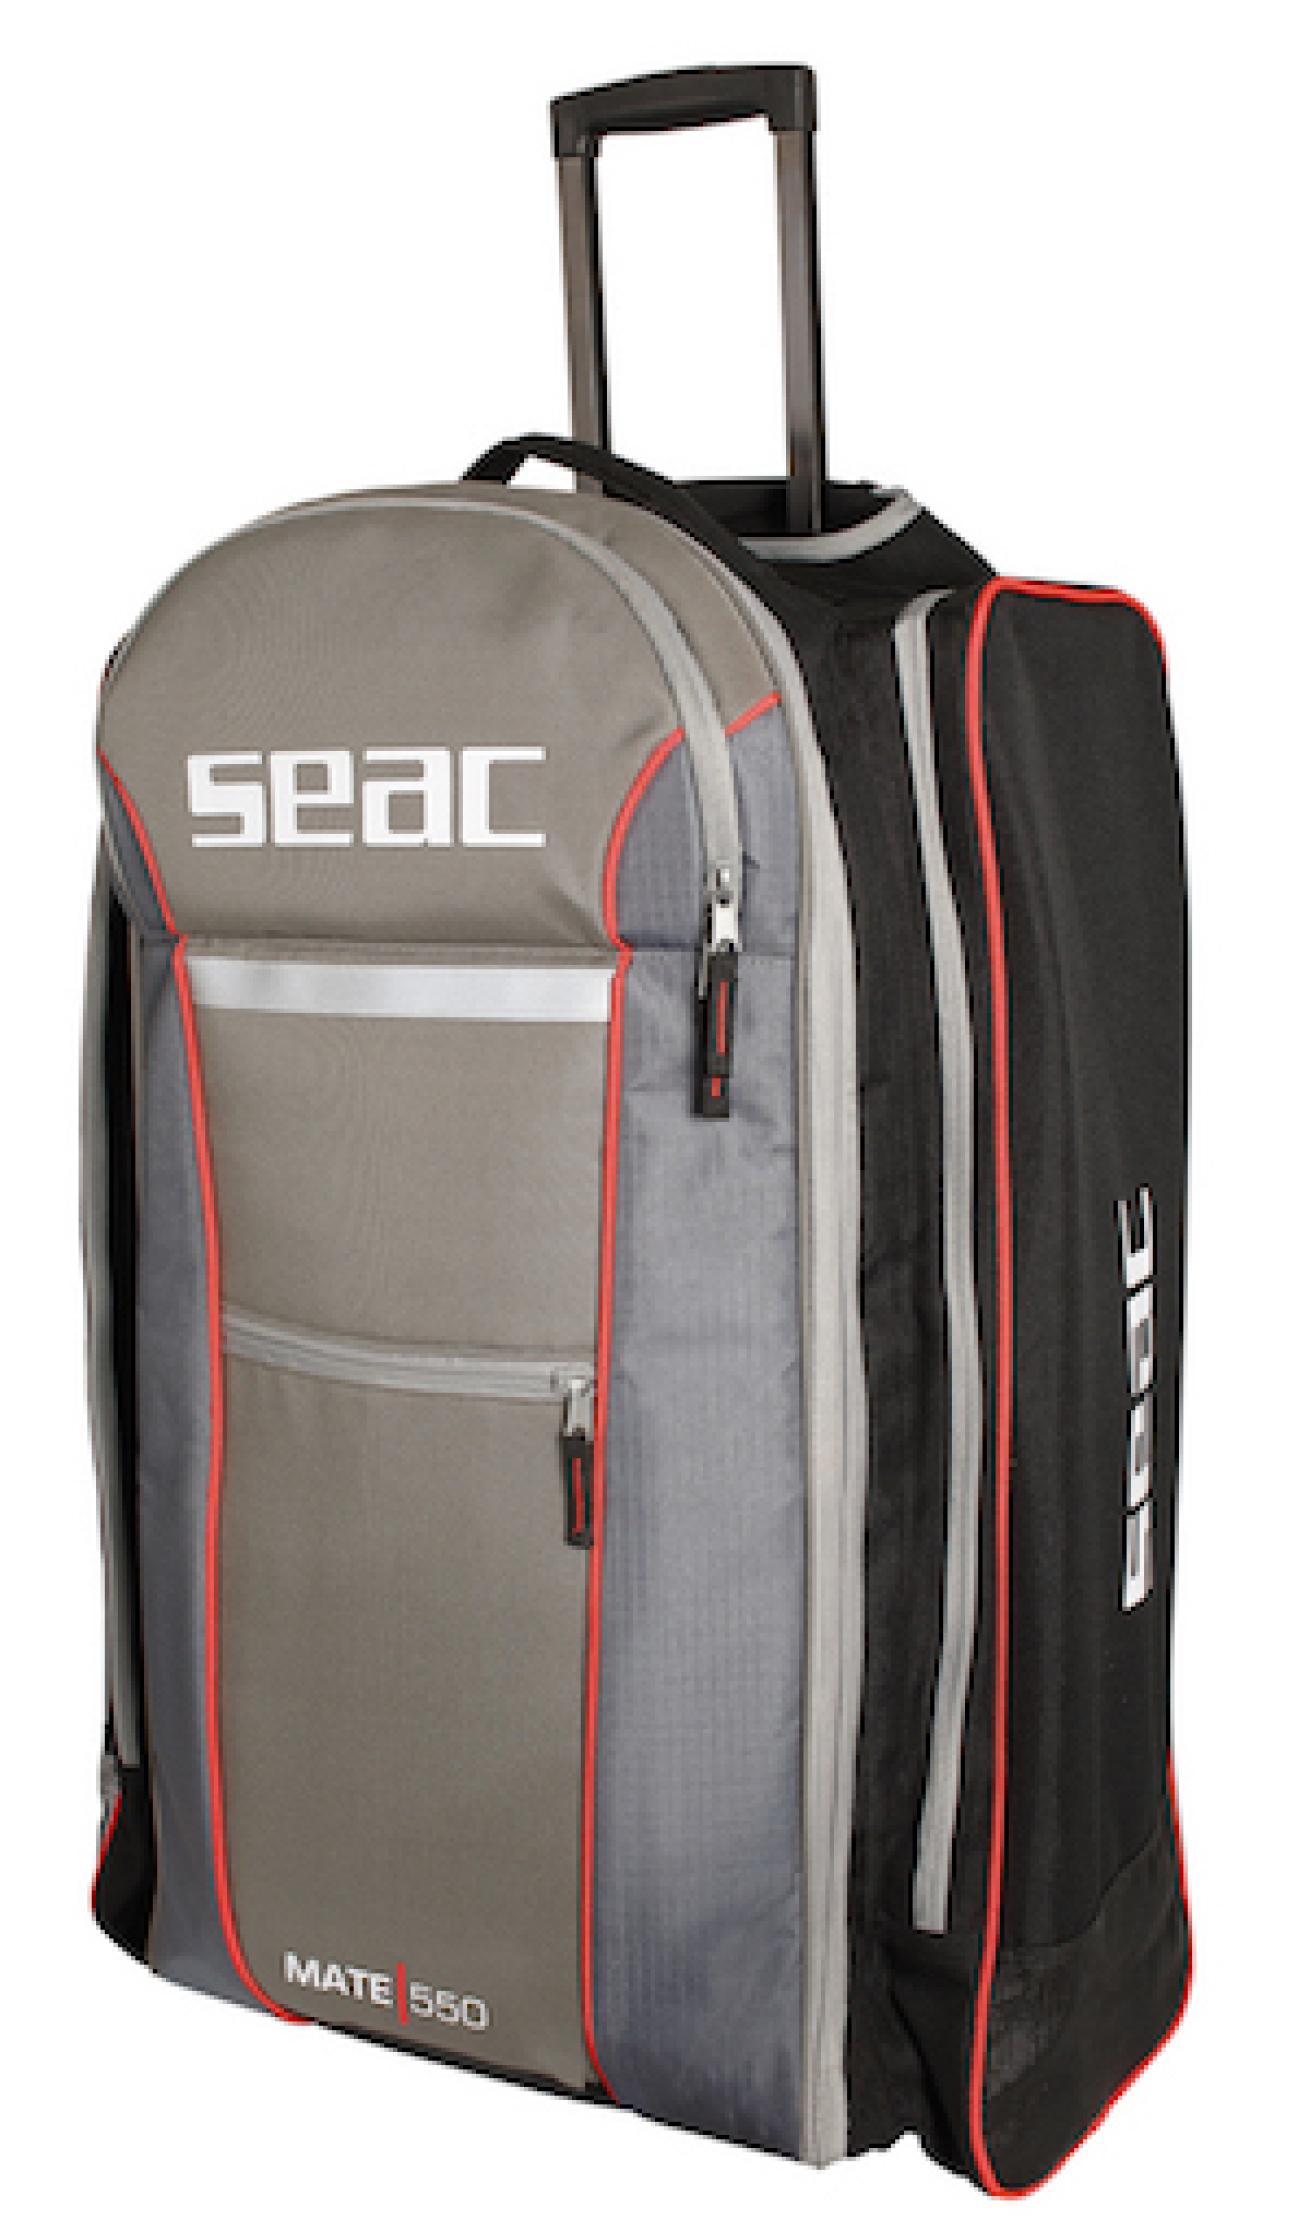 Comfortable and safe travel bag